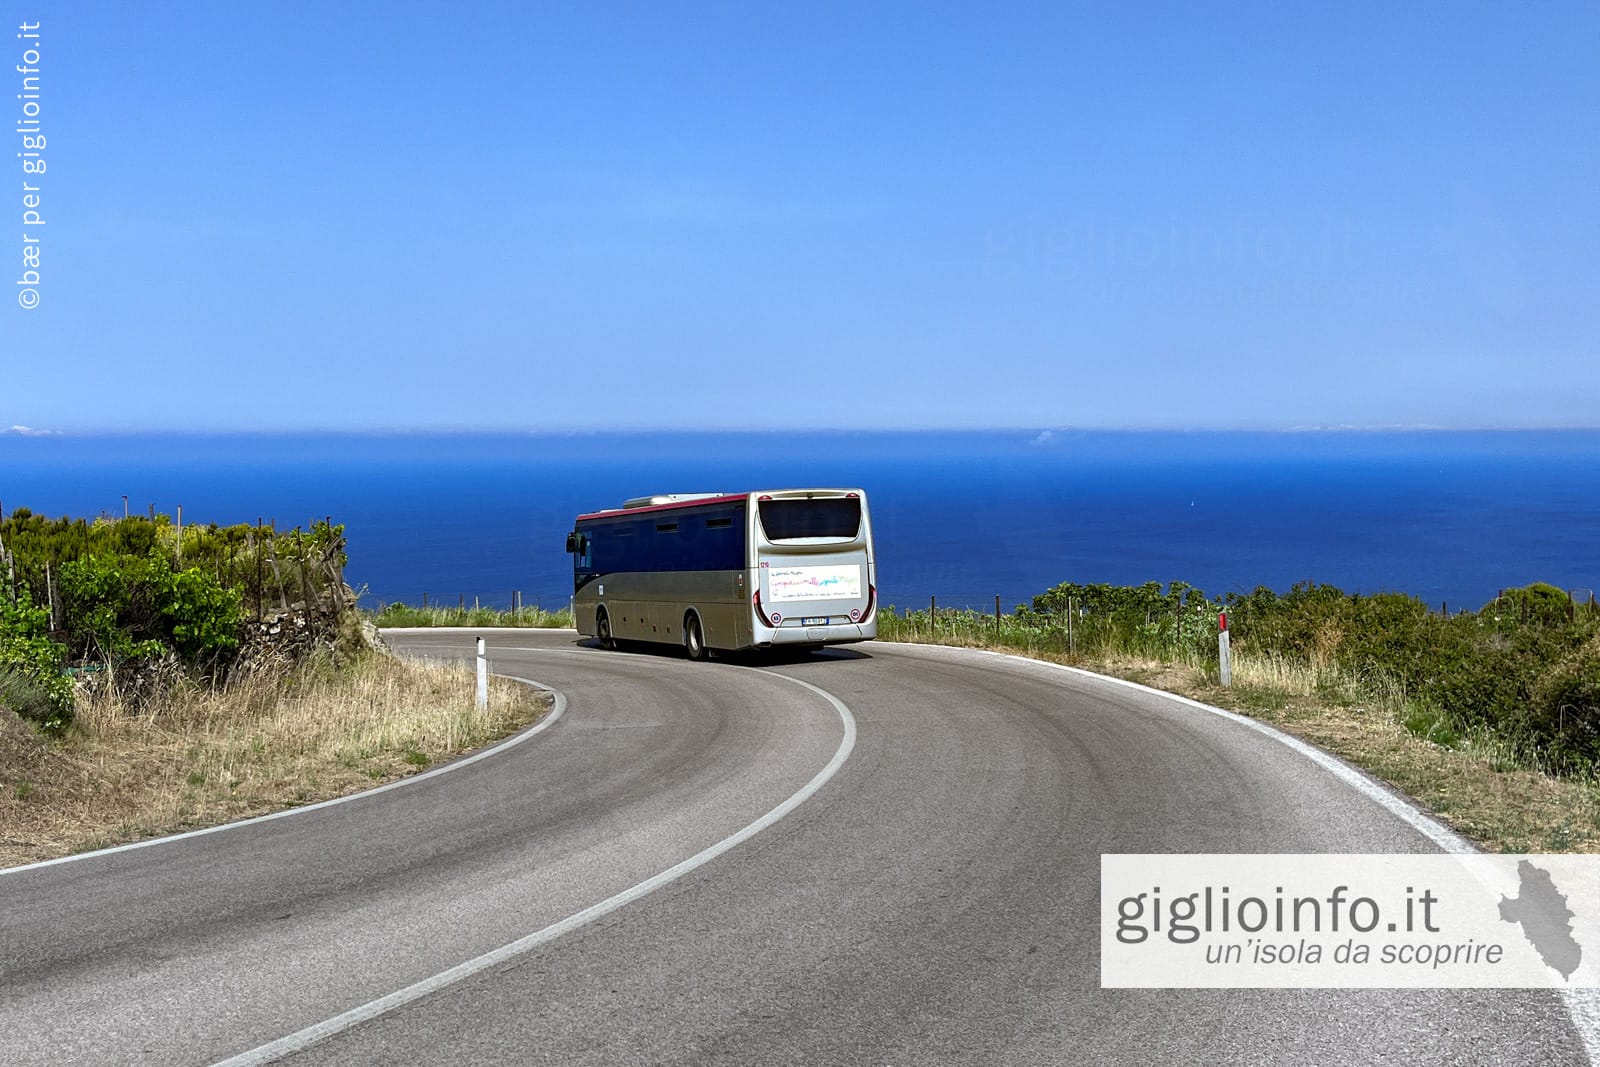 Autobus sulla strada da Giglio Castello tra vigneti e vista mare